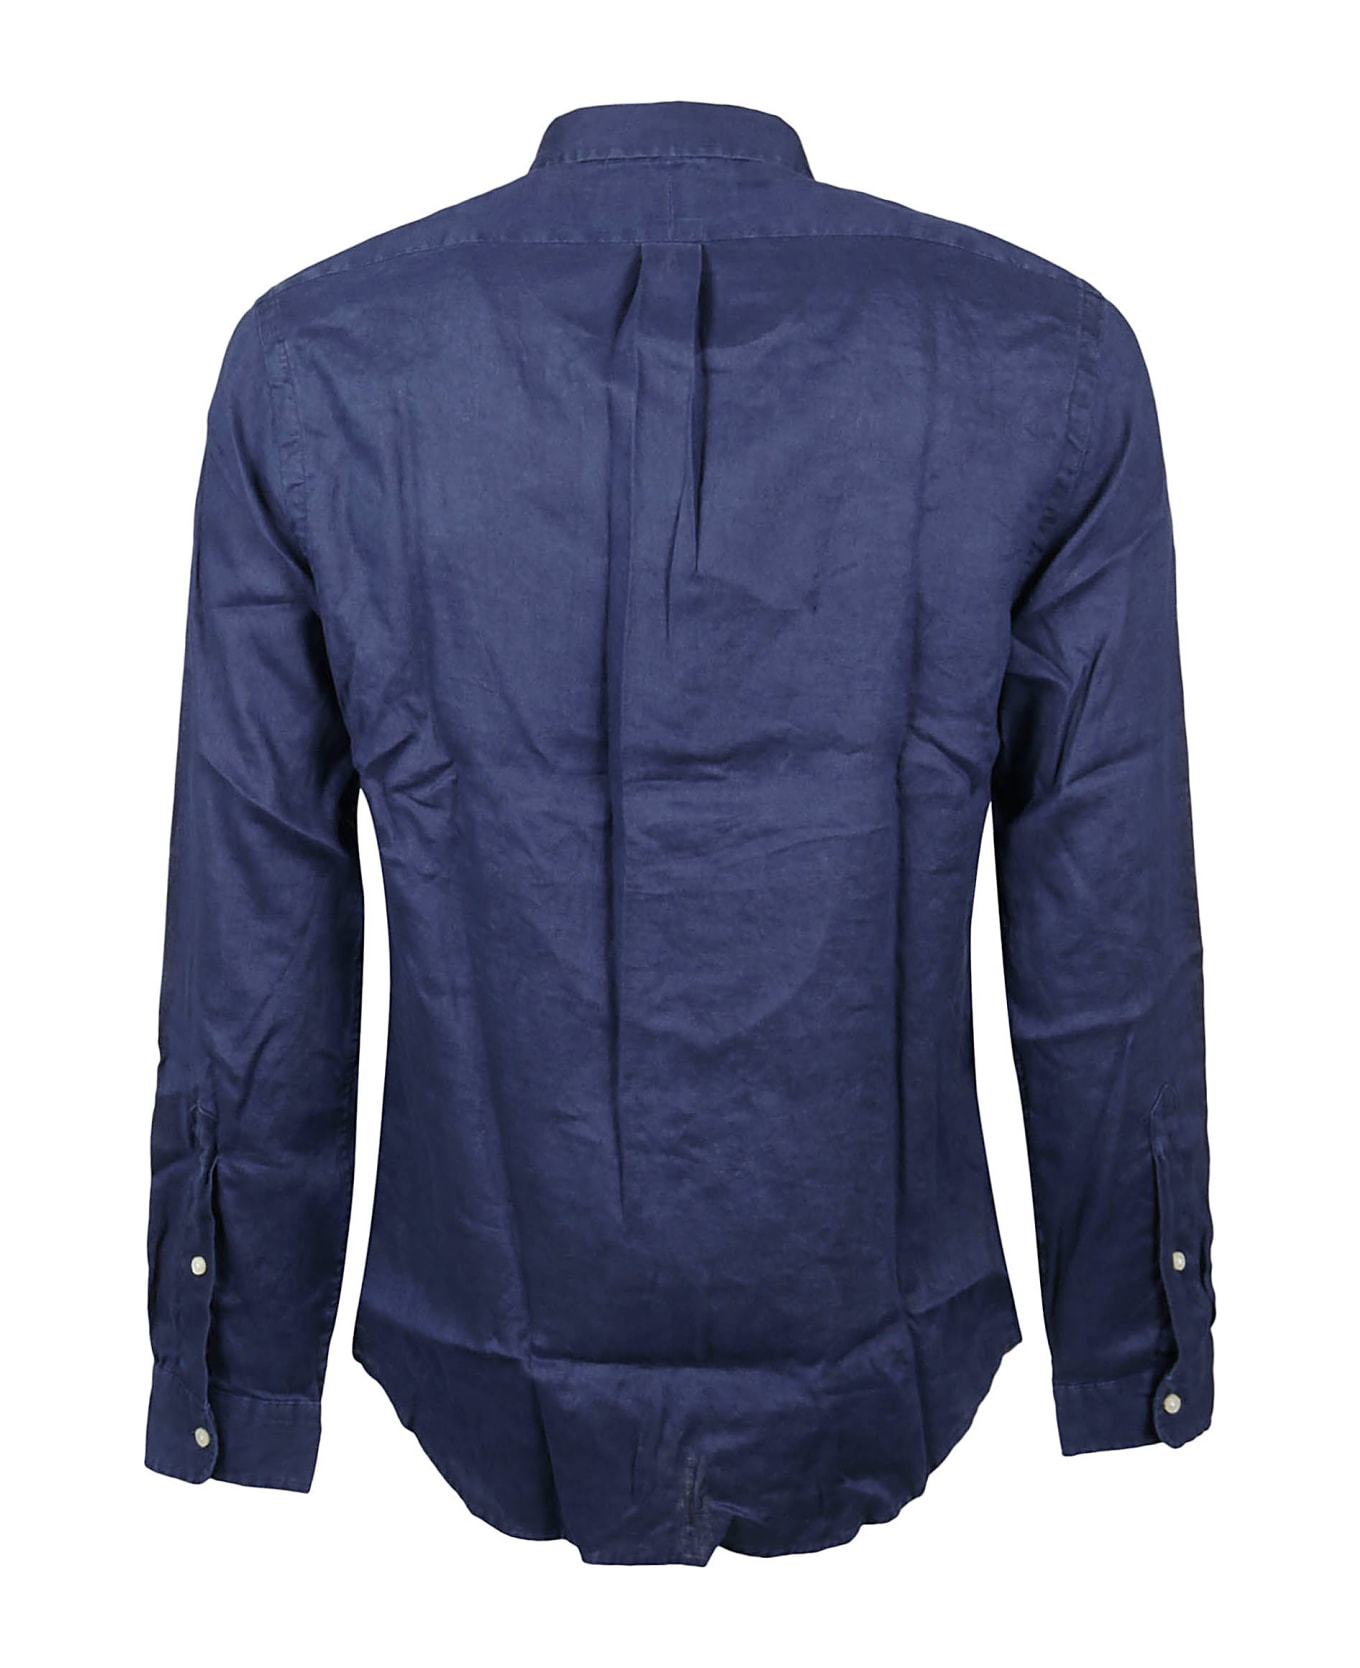 Polo Ralph Lauren Long Sleeve Sport Shirt - Newport Navy